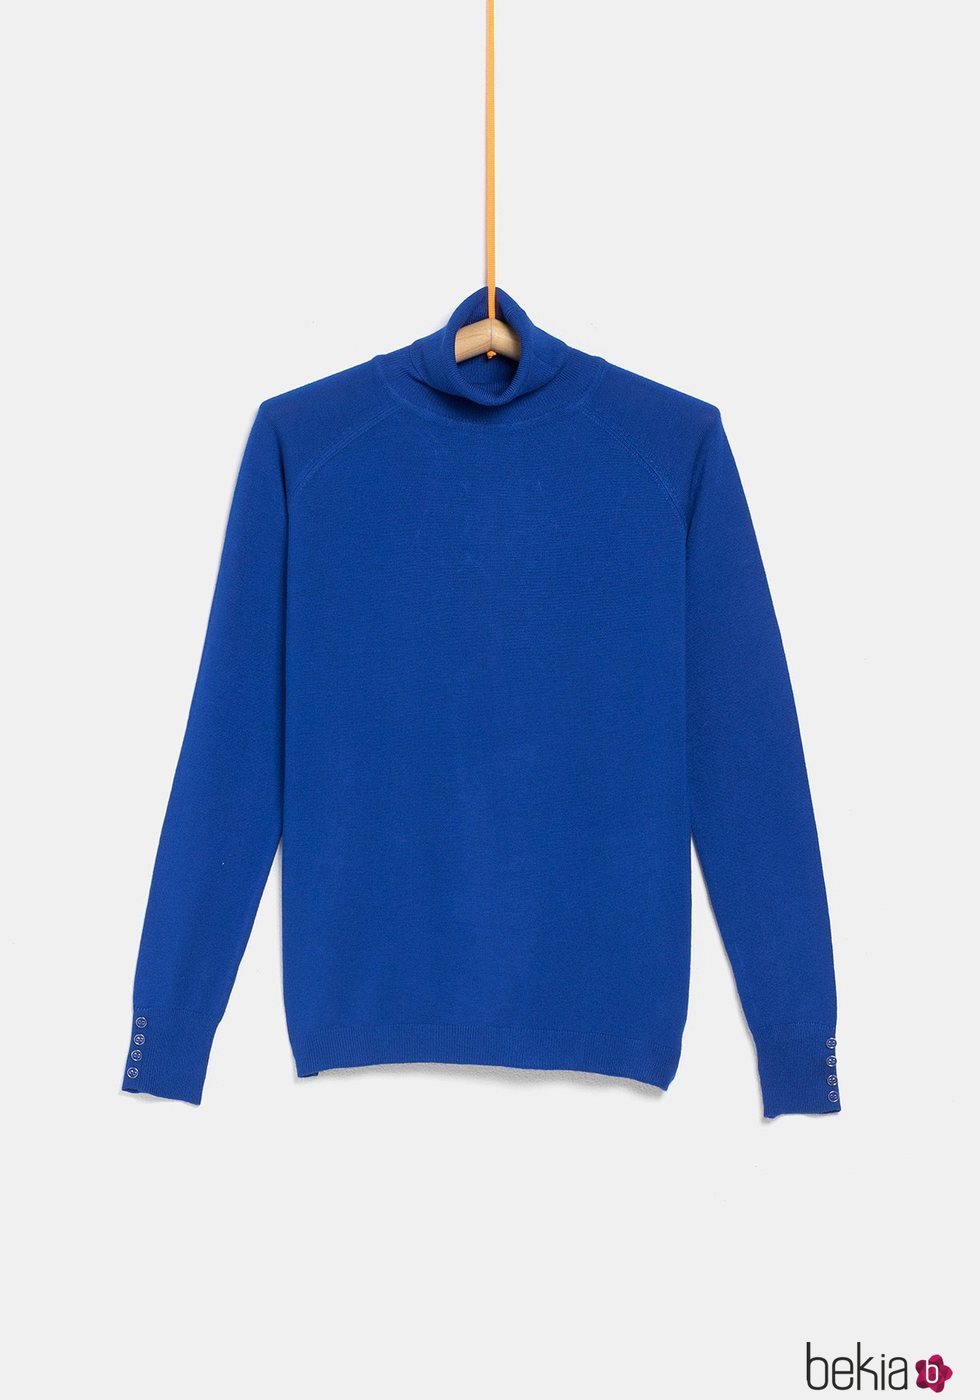 Jersey cuello alto azul de la colección 'I-O' de Carrefour y TEX para otoño/invierno 2019